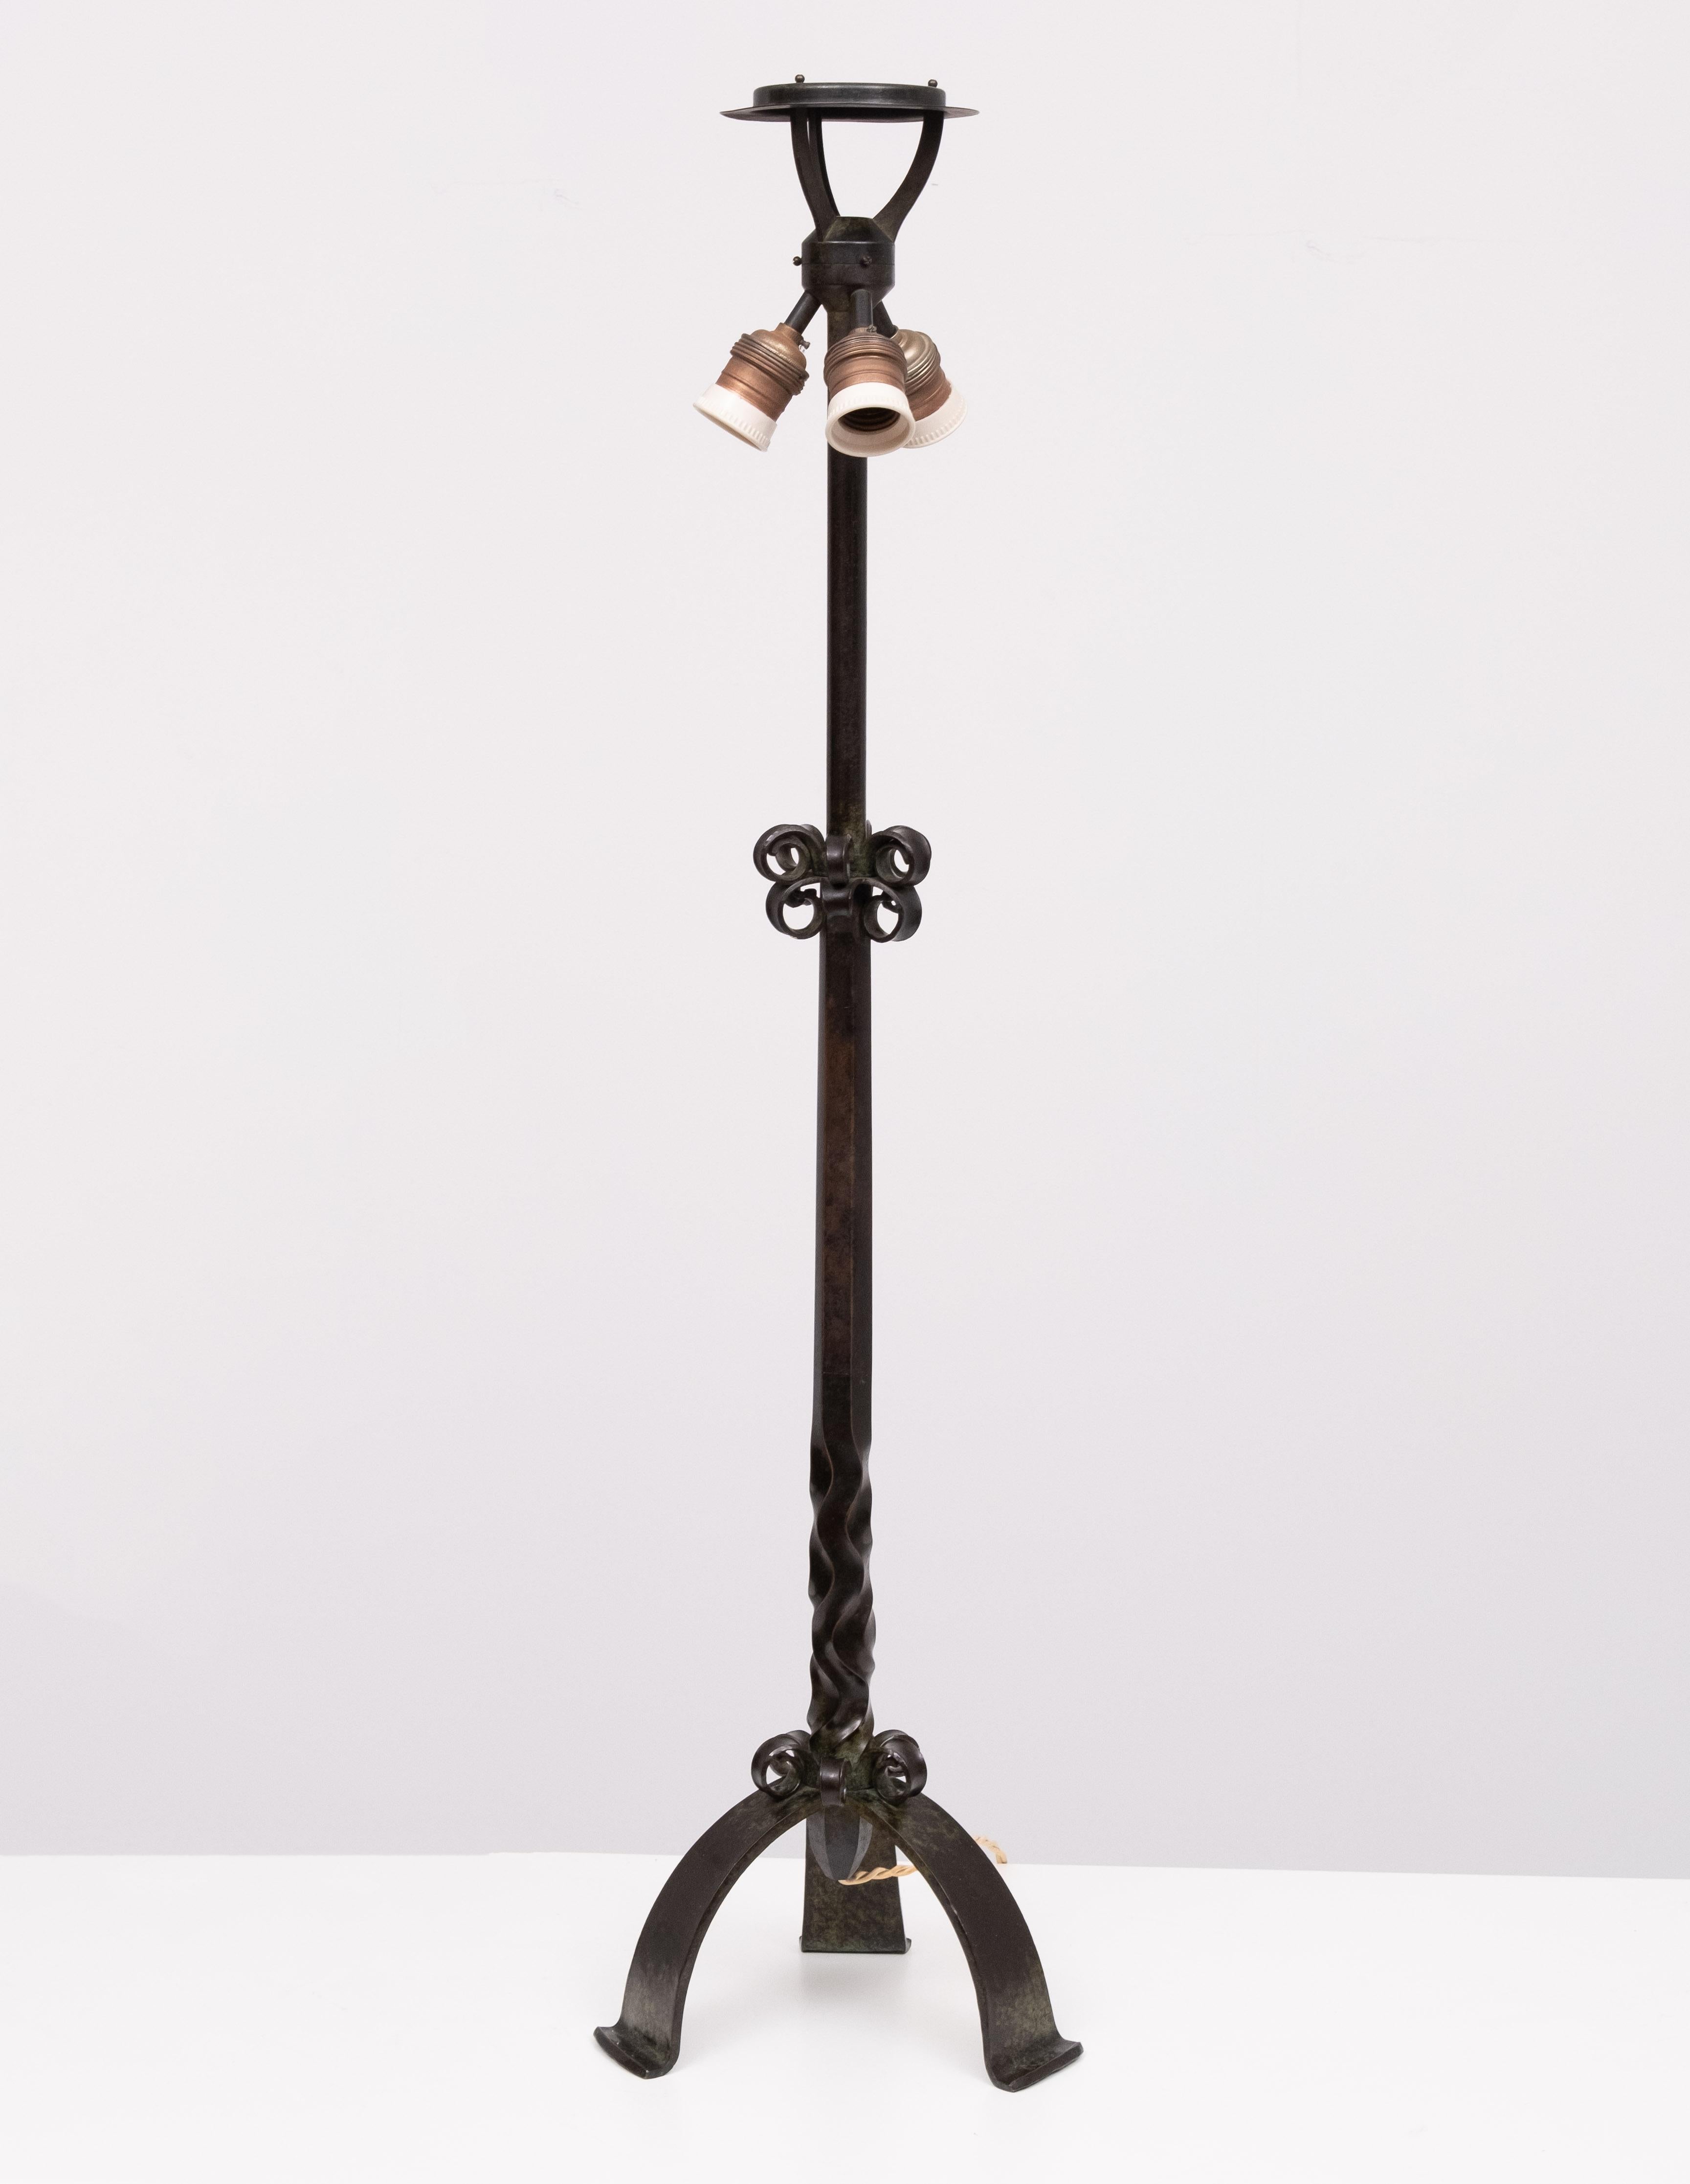 Einzigartiger handgefertigter Lampenständer aus Bronze. Hergestellt und unterzeichnet von 
Edelsmidse Brom .  Goldsmith Brom war ein niederländisches Unternehmen mit Sitz in Utrecht (1856-1961), das auf die Herstellung von Gold- und Silberwaren für